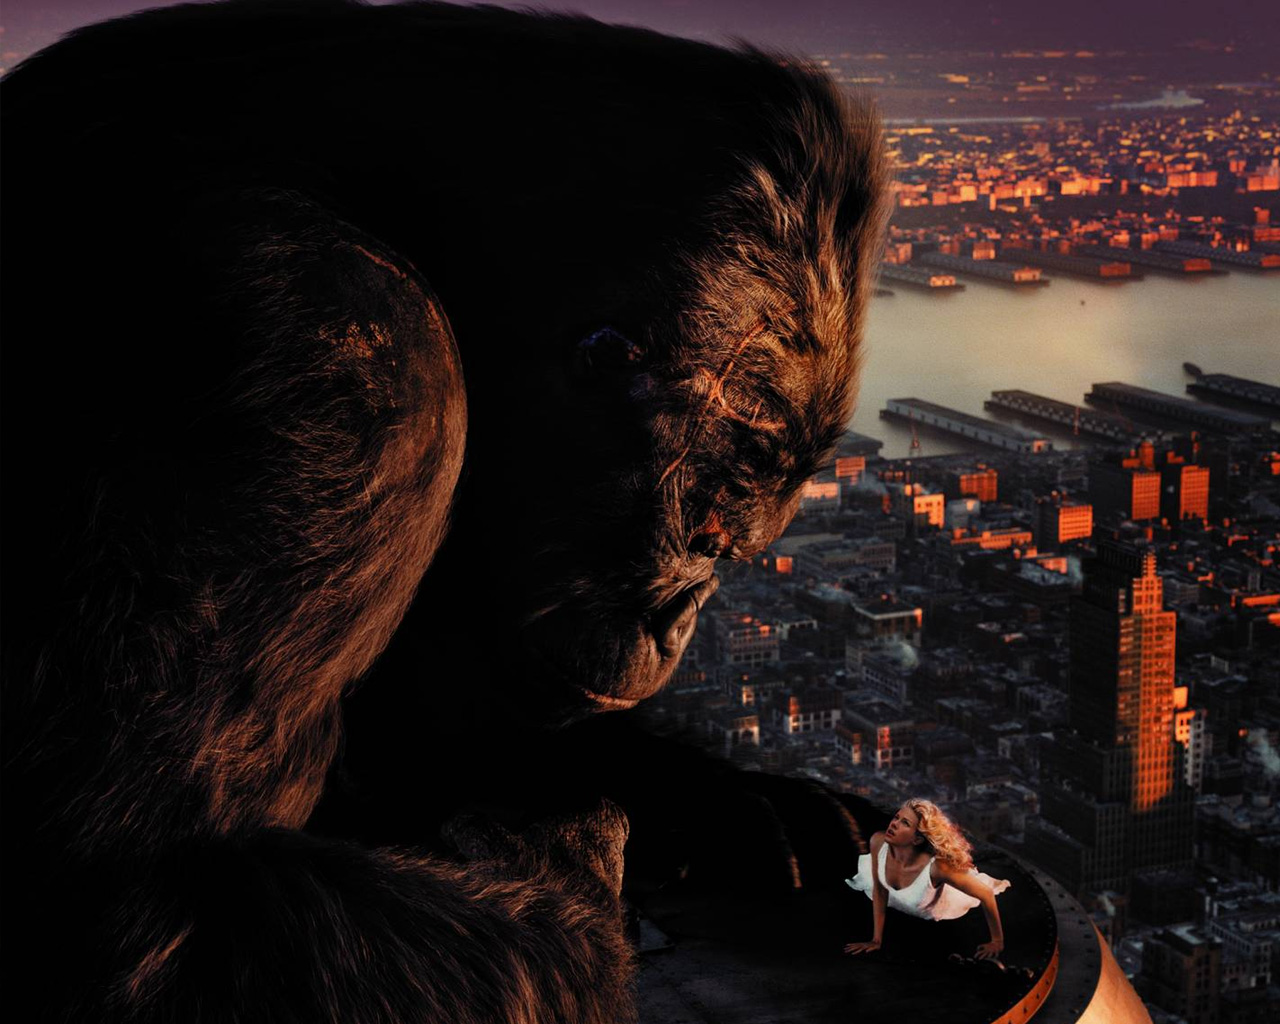 3d обои Кинг-Конг смотрит на Наоми Уоттс на крыше небоскреба из фильма «Кинг-Конг»  обезьяны # 67921